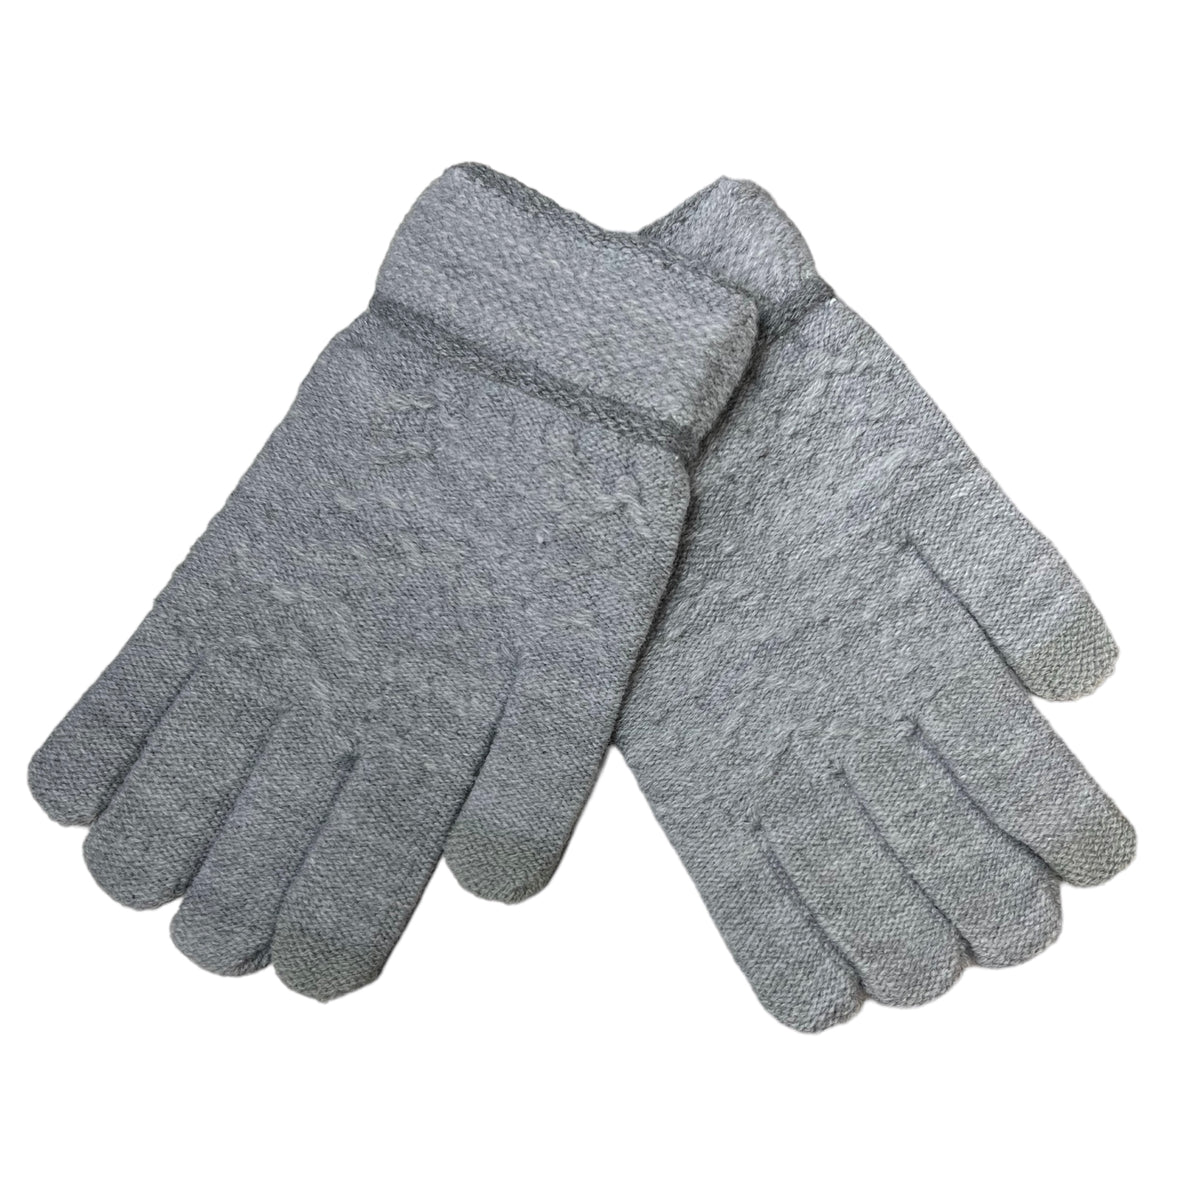 Les gants C'EST ELLE en laine gris sont parfaits pour affronter les jours froids de l'hiver. Fabriqués en laine de qualité supérieure, ces gants vous apporteront un maximum de chaleur et du confort pour toute la saison. Offrez-vous une protection optimale et un style intemporel avec ces gants qui deviendront très vite indispensables. Les gants C'EST ELLE : une couche supplémentaire de chaleur et de style!